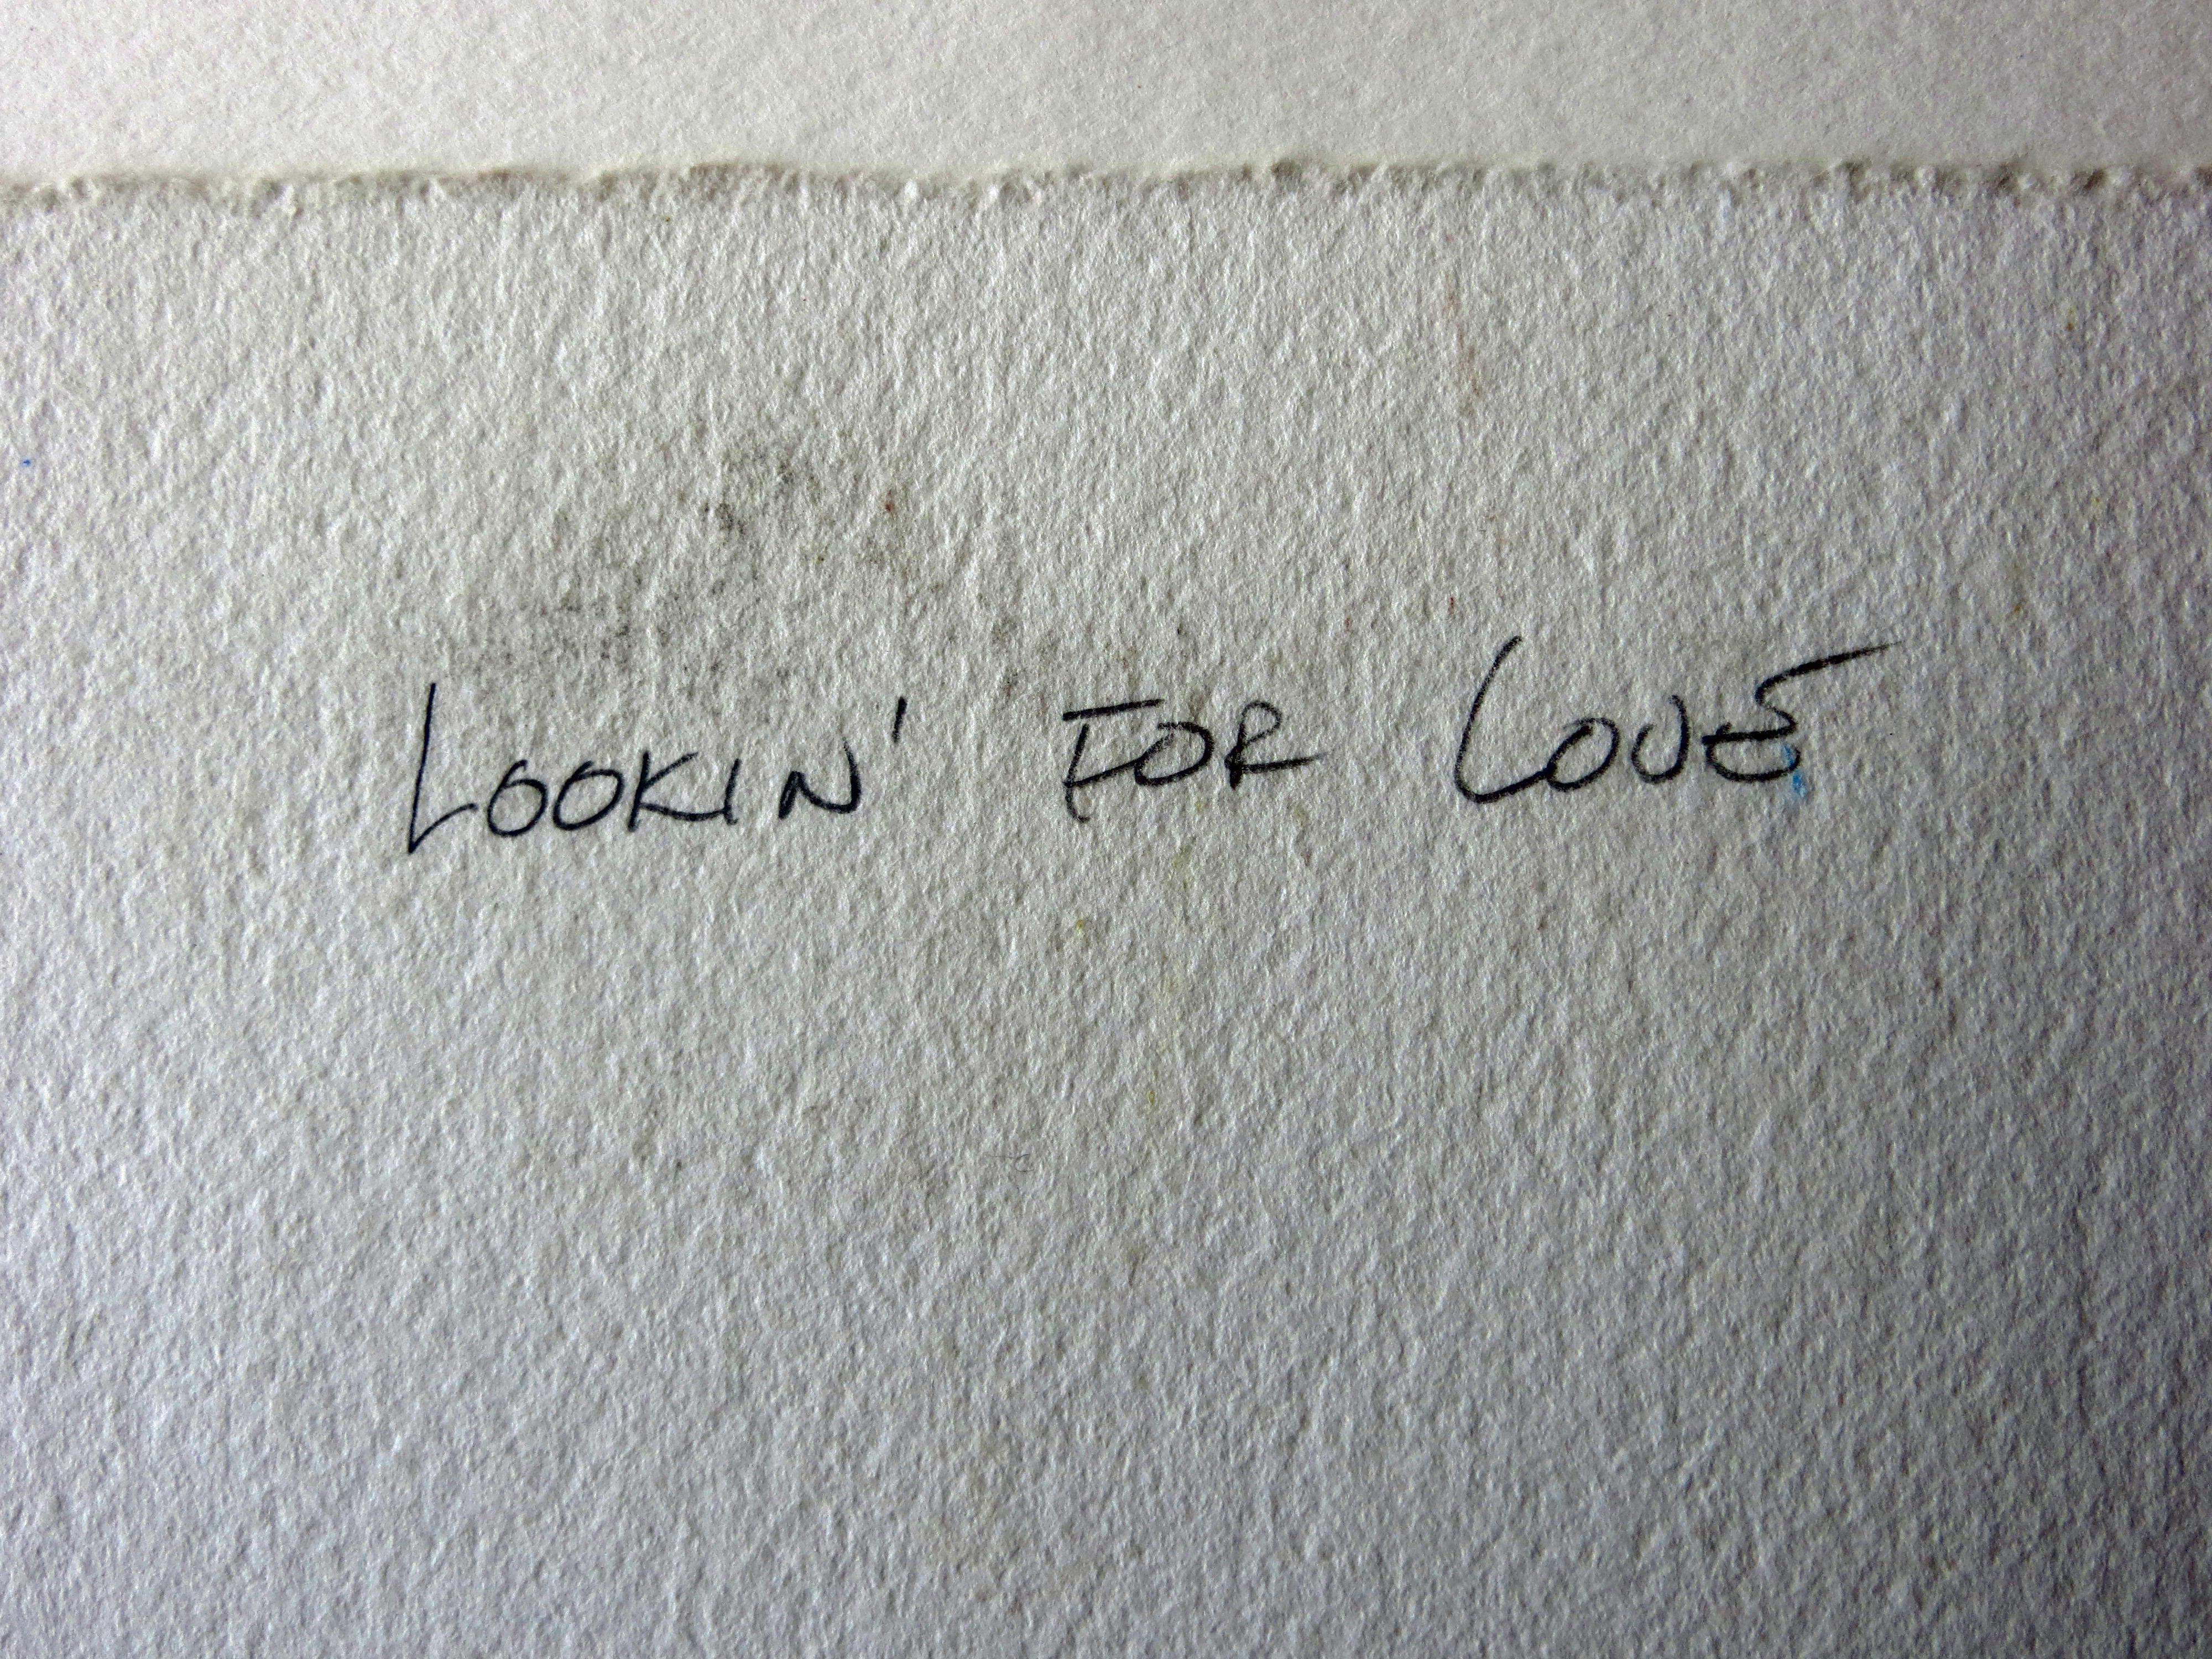 Artiste : Bob Barkell - Américain (1950- )
Titre : Lookin' for Love
Année : vers 1990
Médium : Aquarelle
Taille de la vue : 11,75 x 17,75 pouces. 
Taille du cadre : 19.5 x 25.5 pouces 
Signature : Signé en haut à droite
Condition : Très bon 
Cadre :